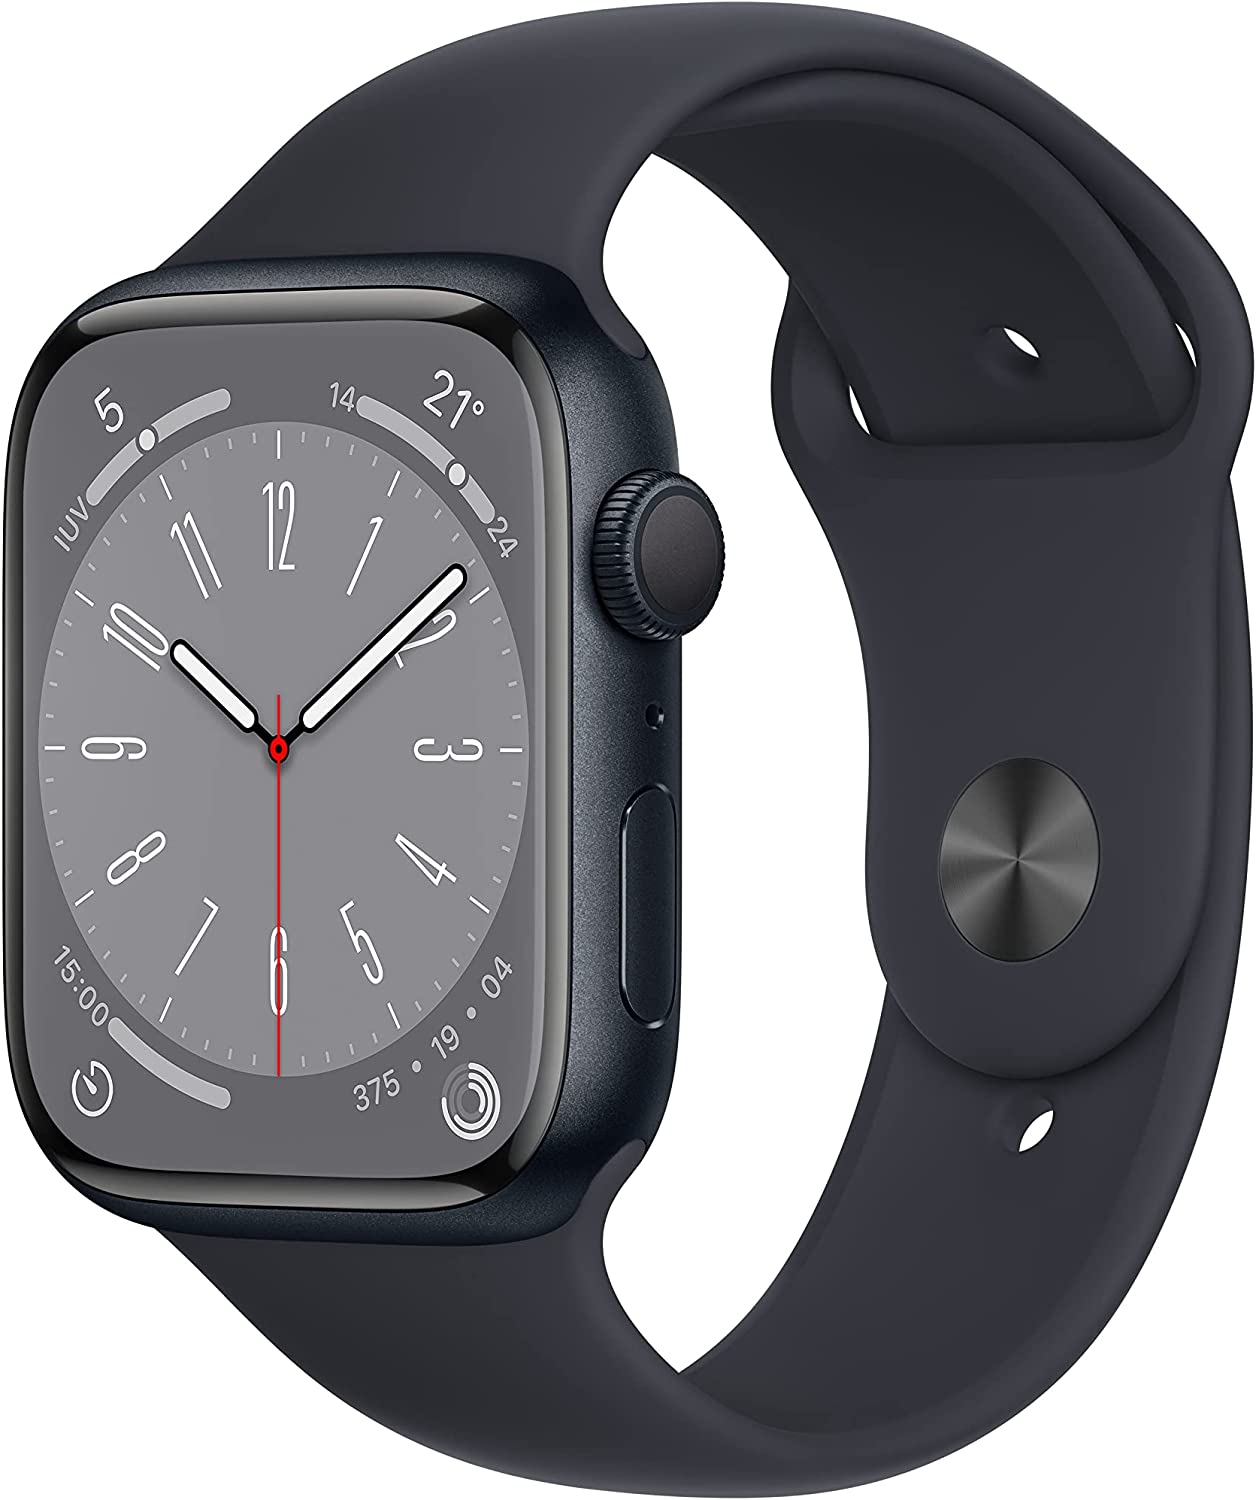 Apple Watch 8 vs Apple Watch 9